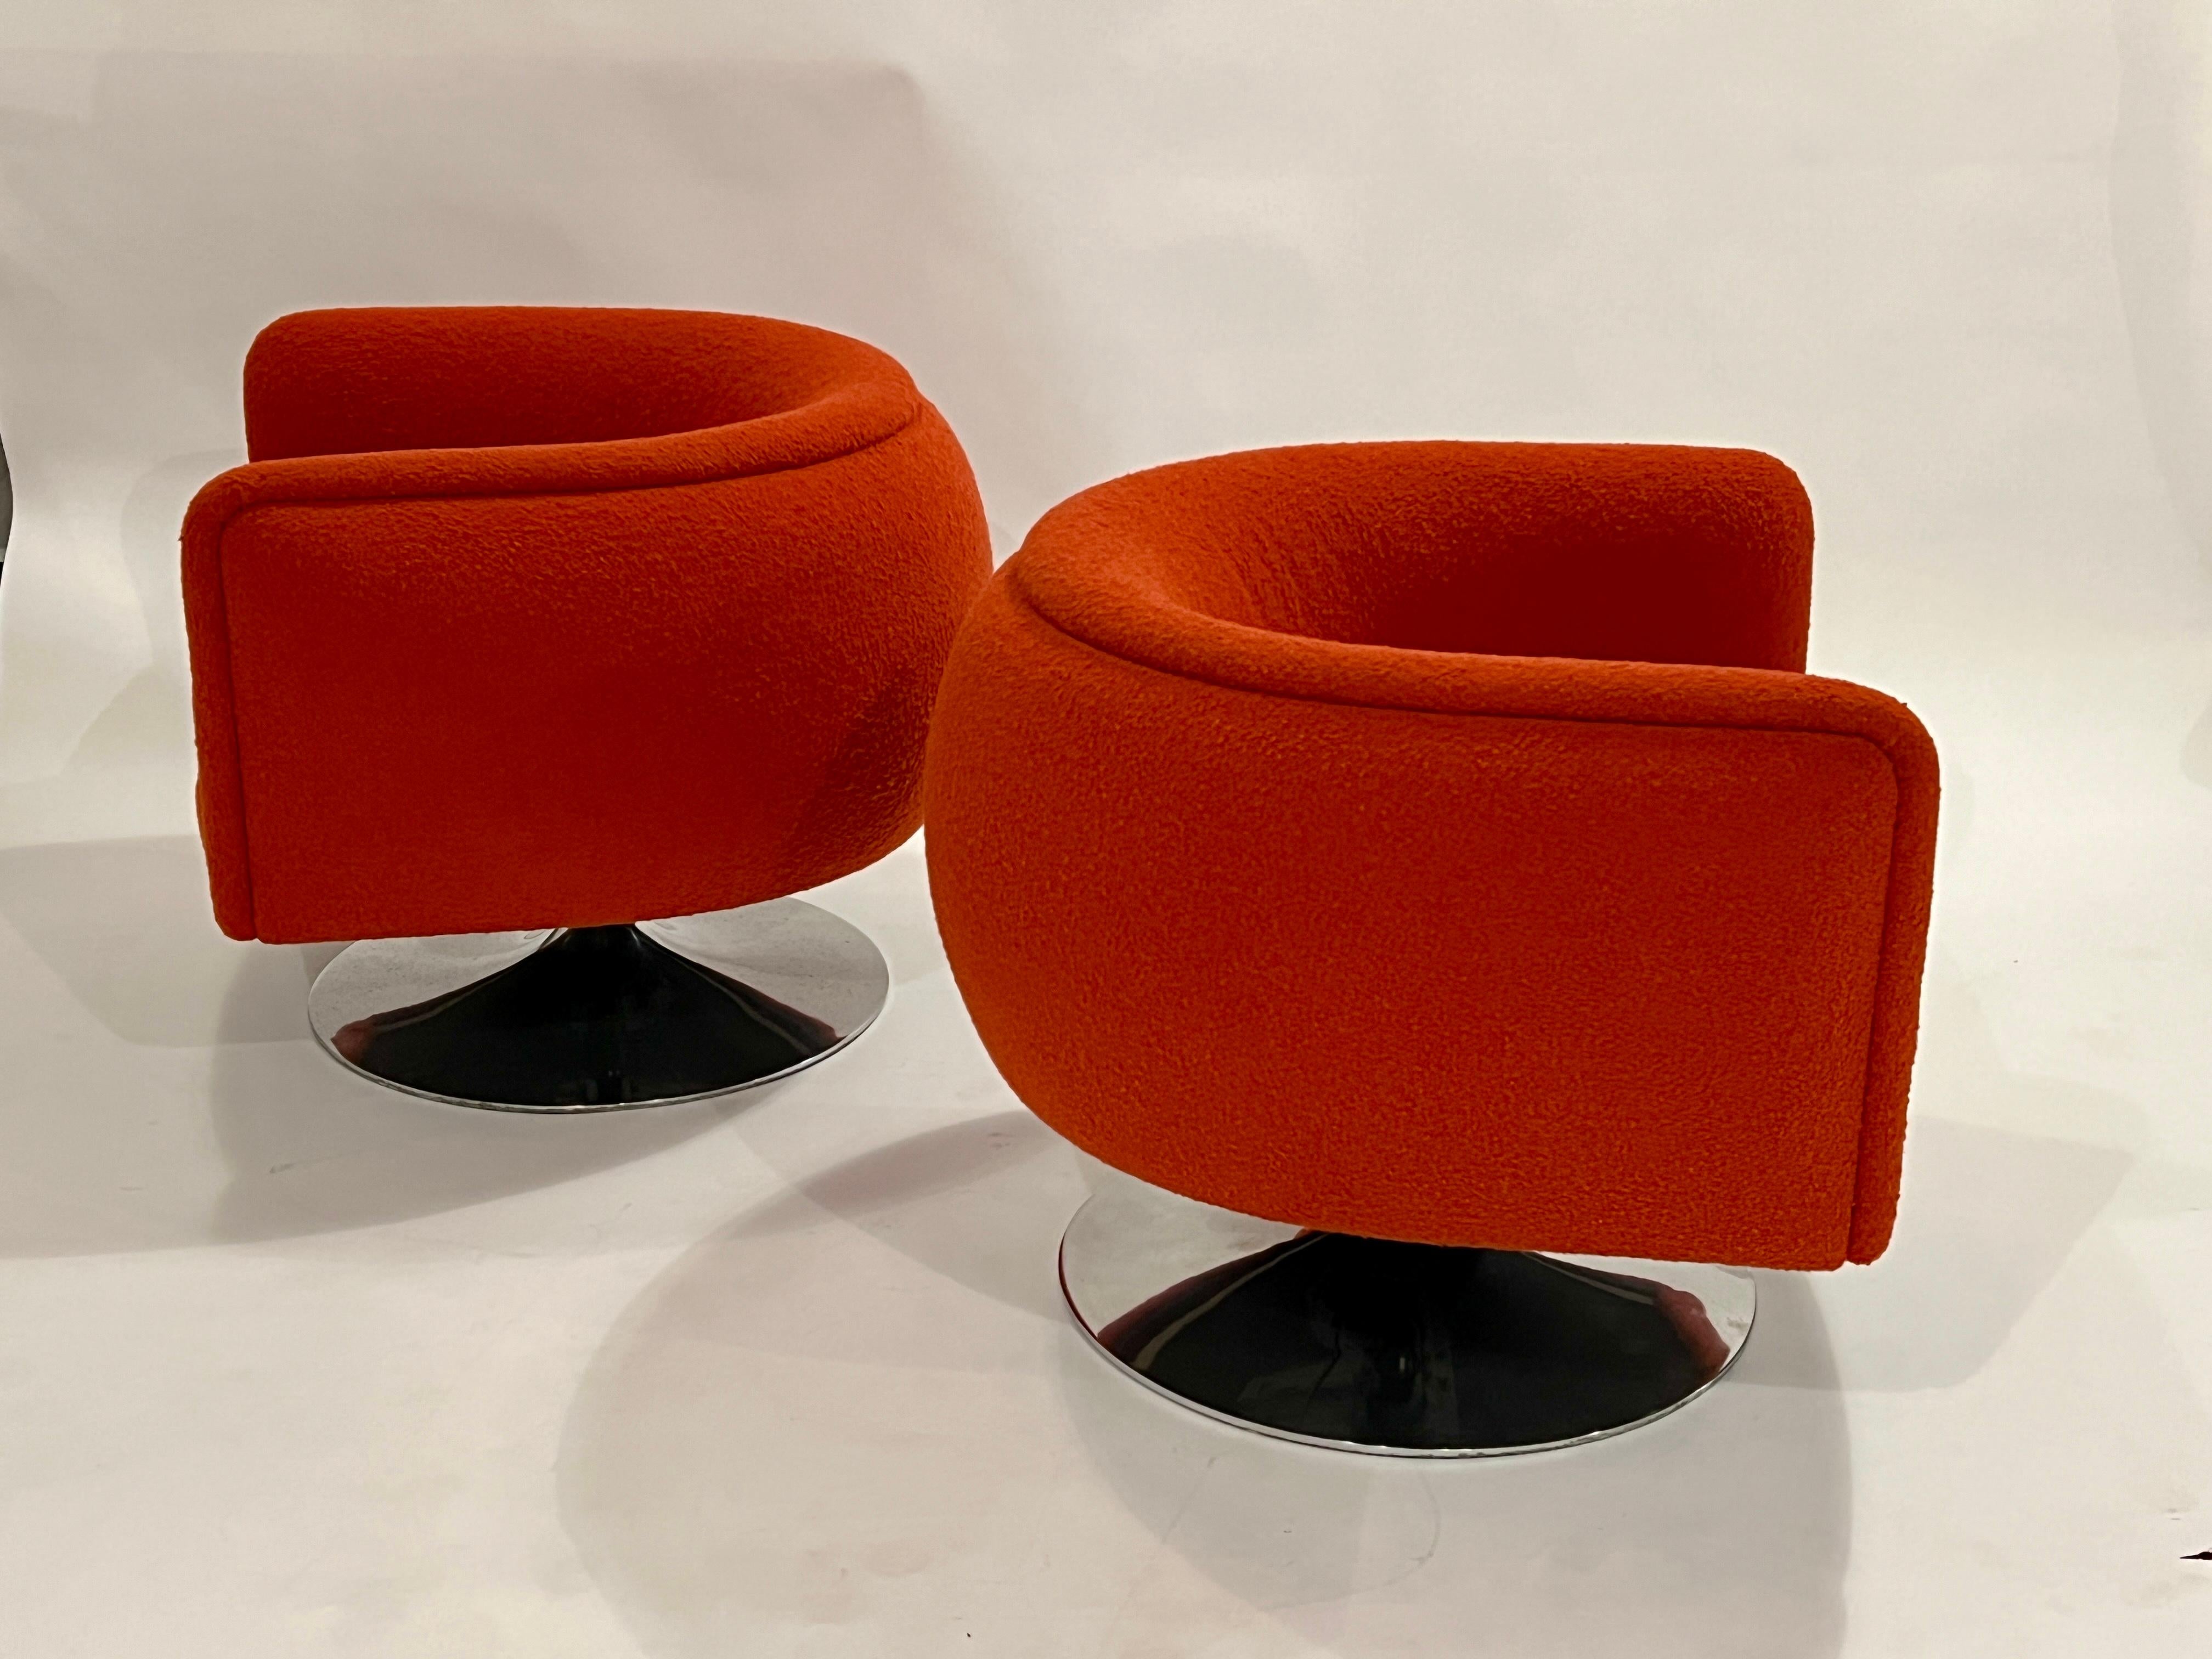 Ein Paar Joseph D'Urso Drehsessel auf poliertem Aluminium-Chrom-Gestell mit original rotem Bouclé-Stoff und verstellbaren Sitzen. Maße bei einstellbarer Sitzhöhe variieren:

Stuhl: 32